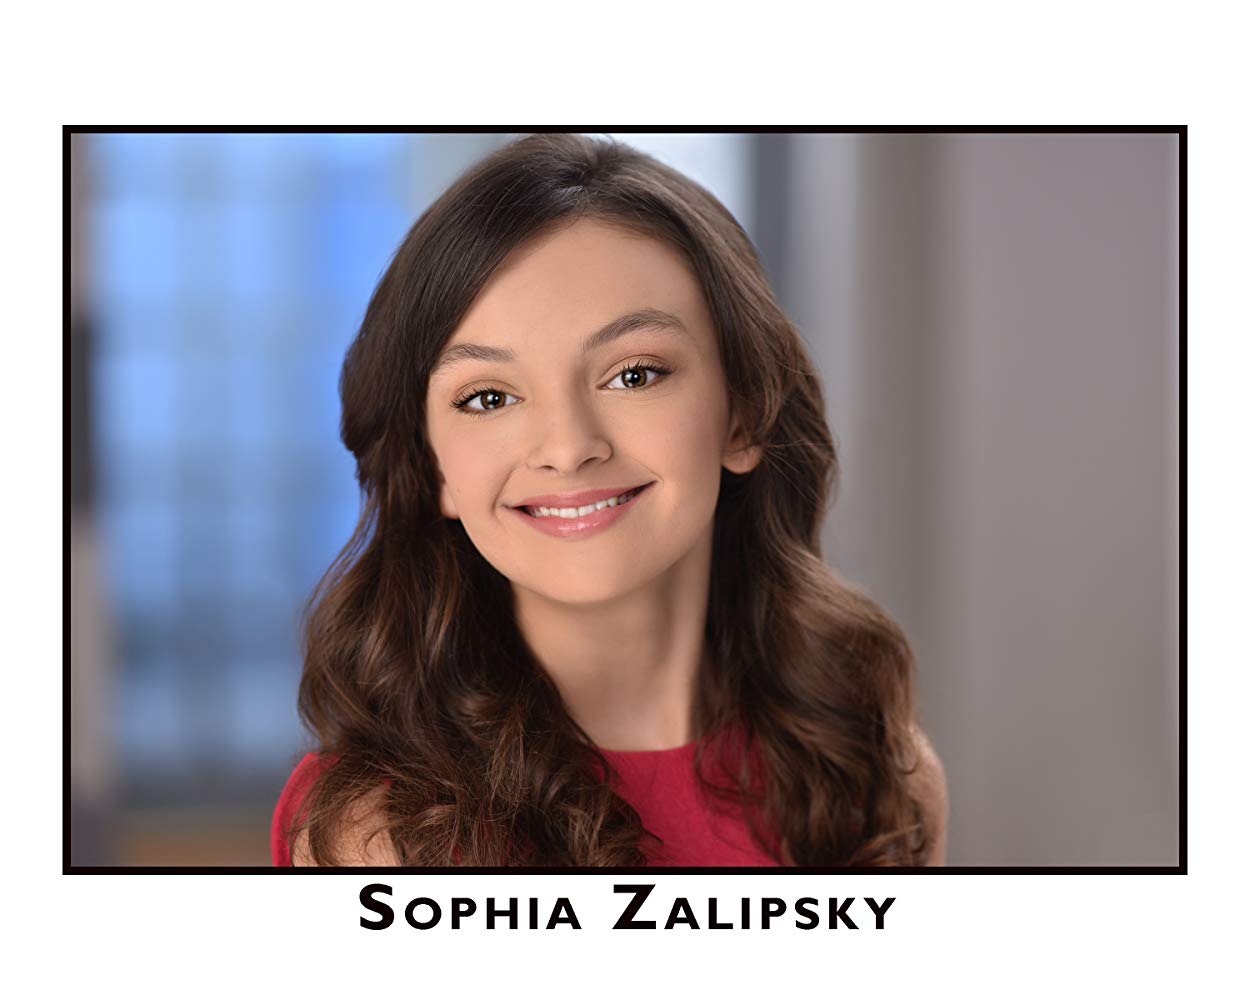 Sophia Zalipsky